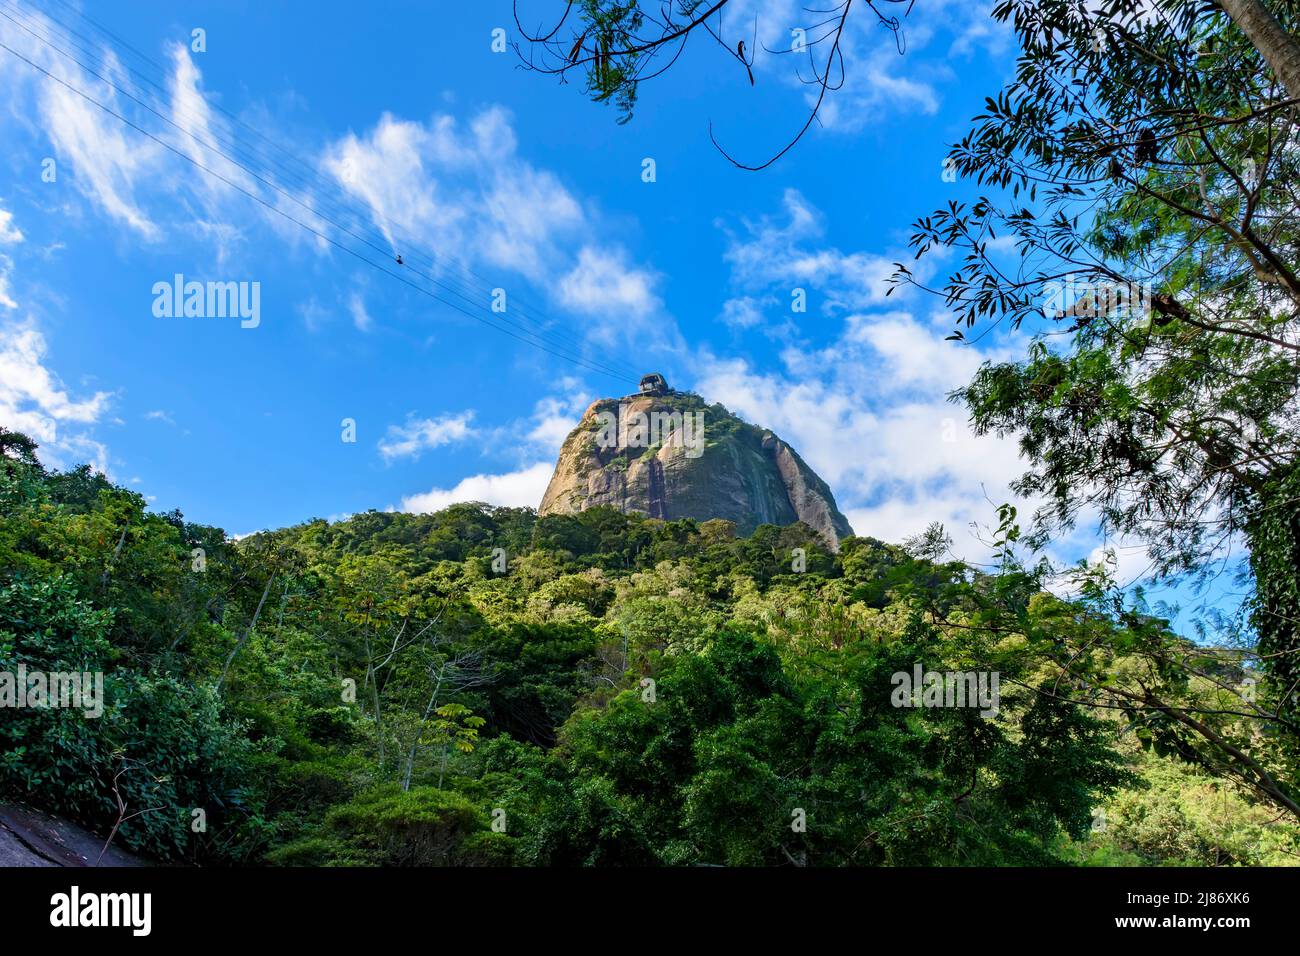 Montagne de Sugarloaf vue à travers la végétation de la forêt tropicale sur les collines de Rio de Janeiro, Brésil Banque D'Images